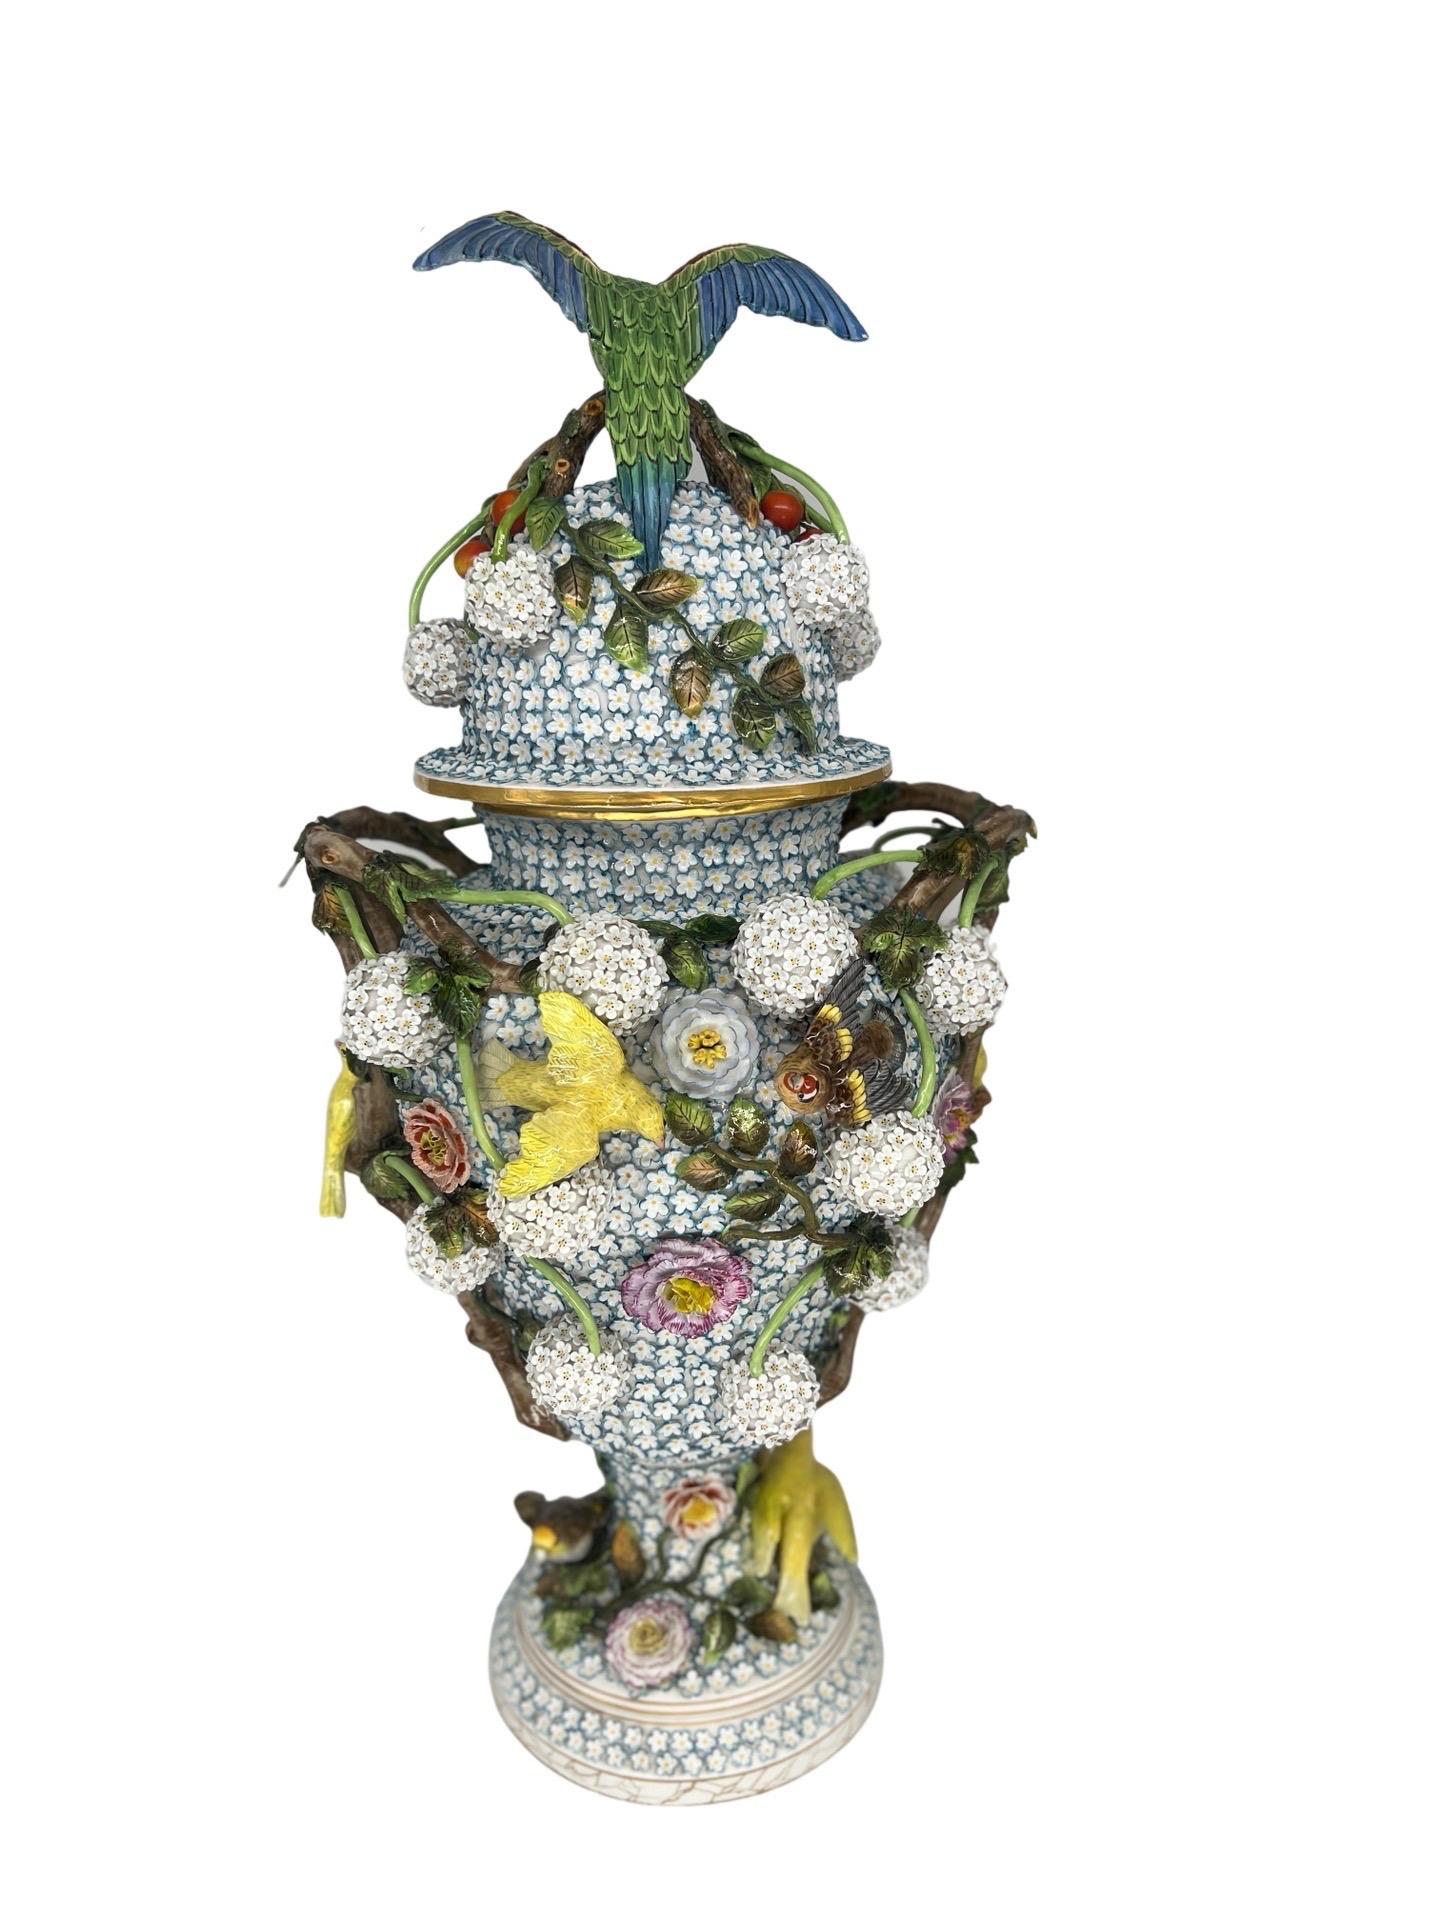 Der monumentale J.J. Die Meissener Schneeballen-Porzellan-Deckelurne mit Vogelmotiven von Kaendler aus dem Jahr 1780 ist ein exquisites und seltenes Kunstwerk, das die Handwerkskunst und Schönheit der Meissener Porzellantradition verkörpert. Diese